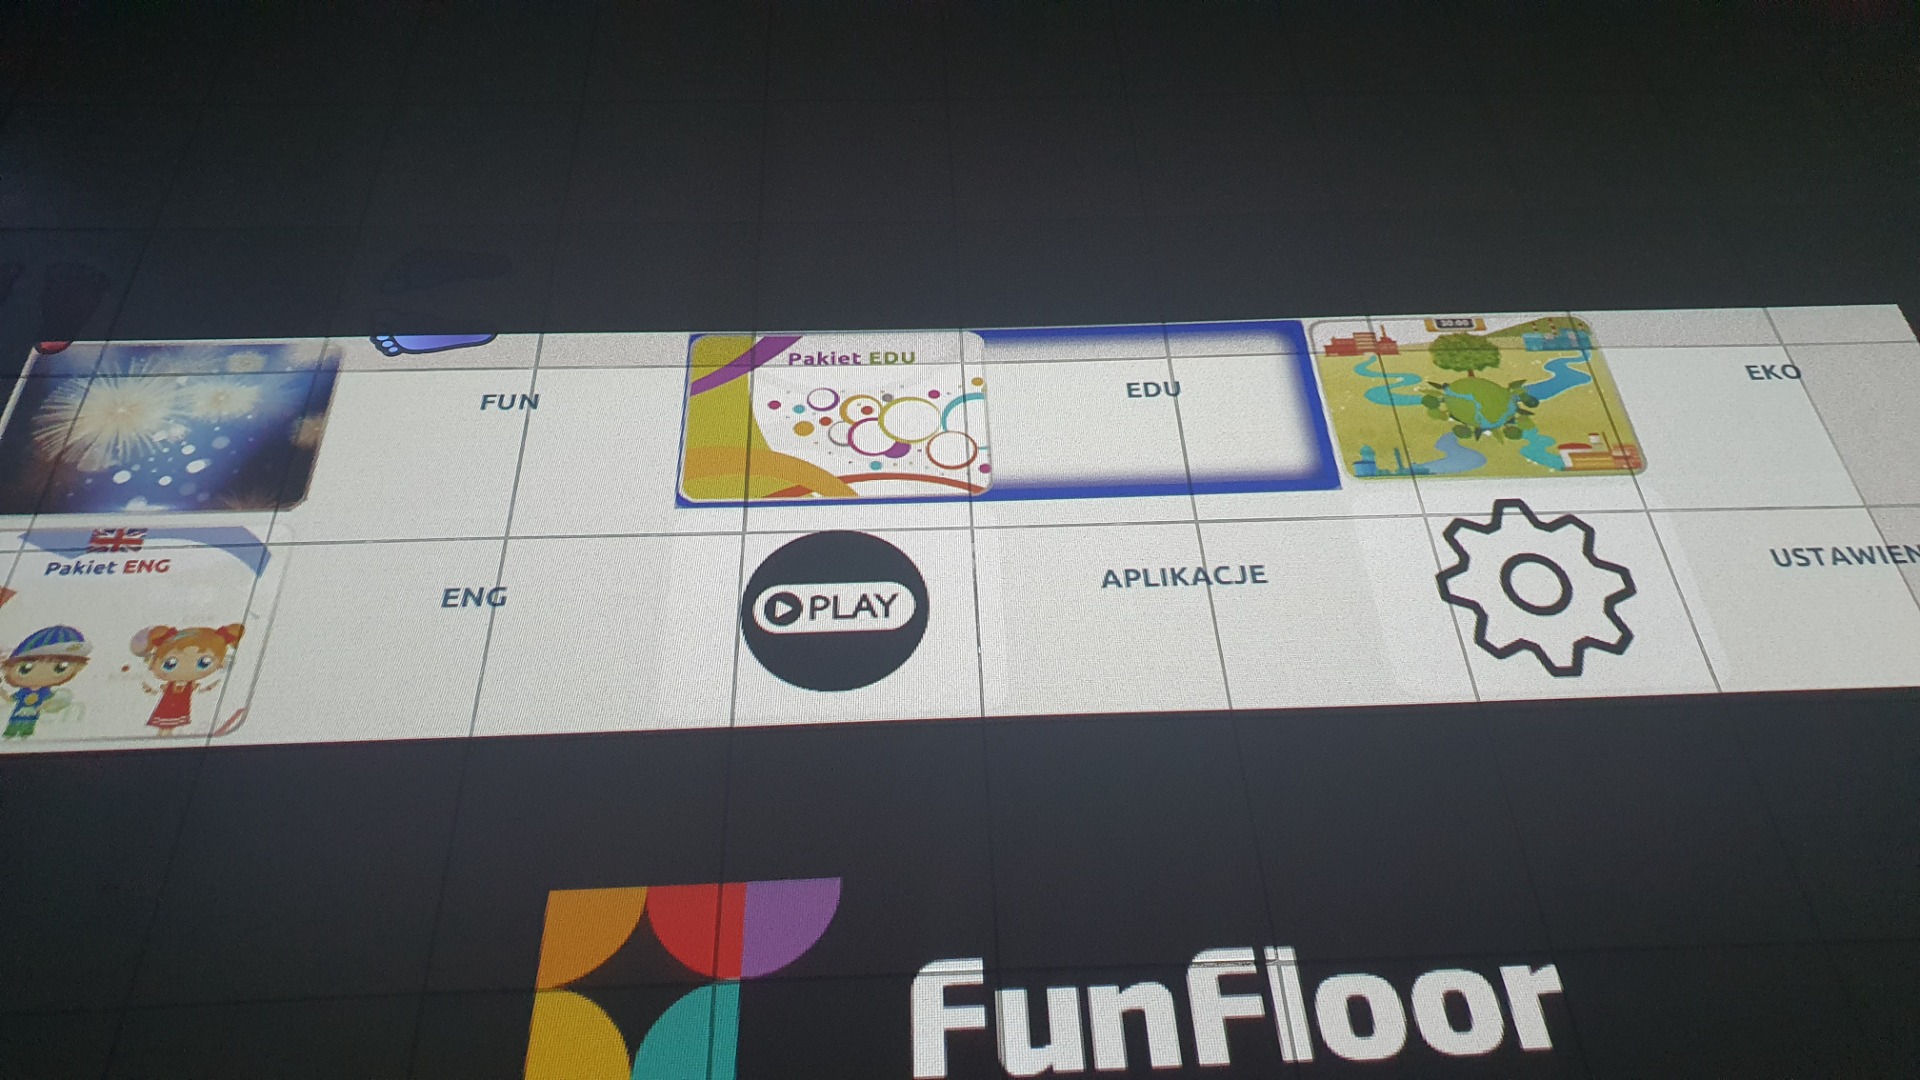 Taka niespodzianka! Nową interaktywną podłogę FunFloor Dzieci mają także na piętrze! ❤🤸‍♀️⚽️🤸‍♂️❤ - Obrazek 6